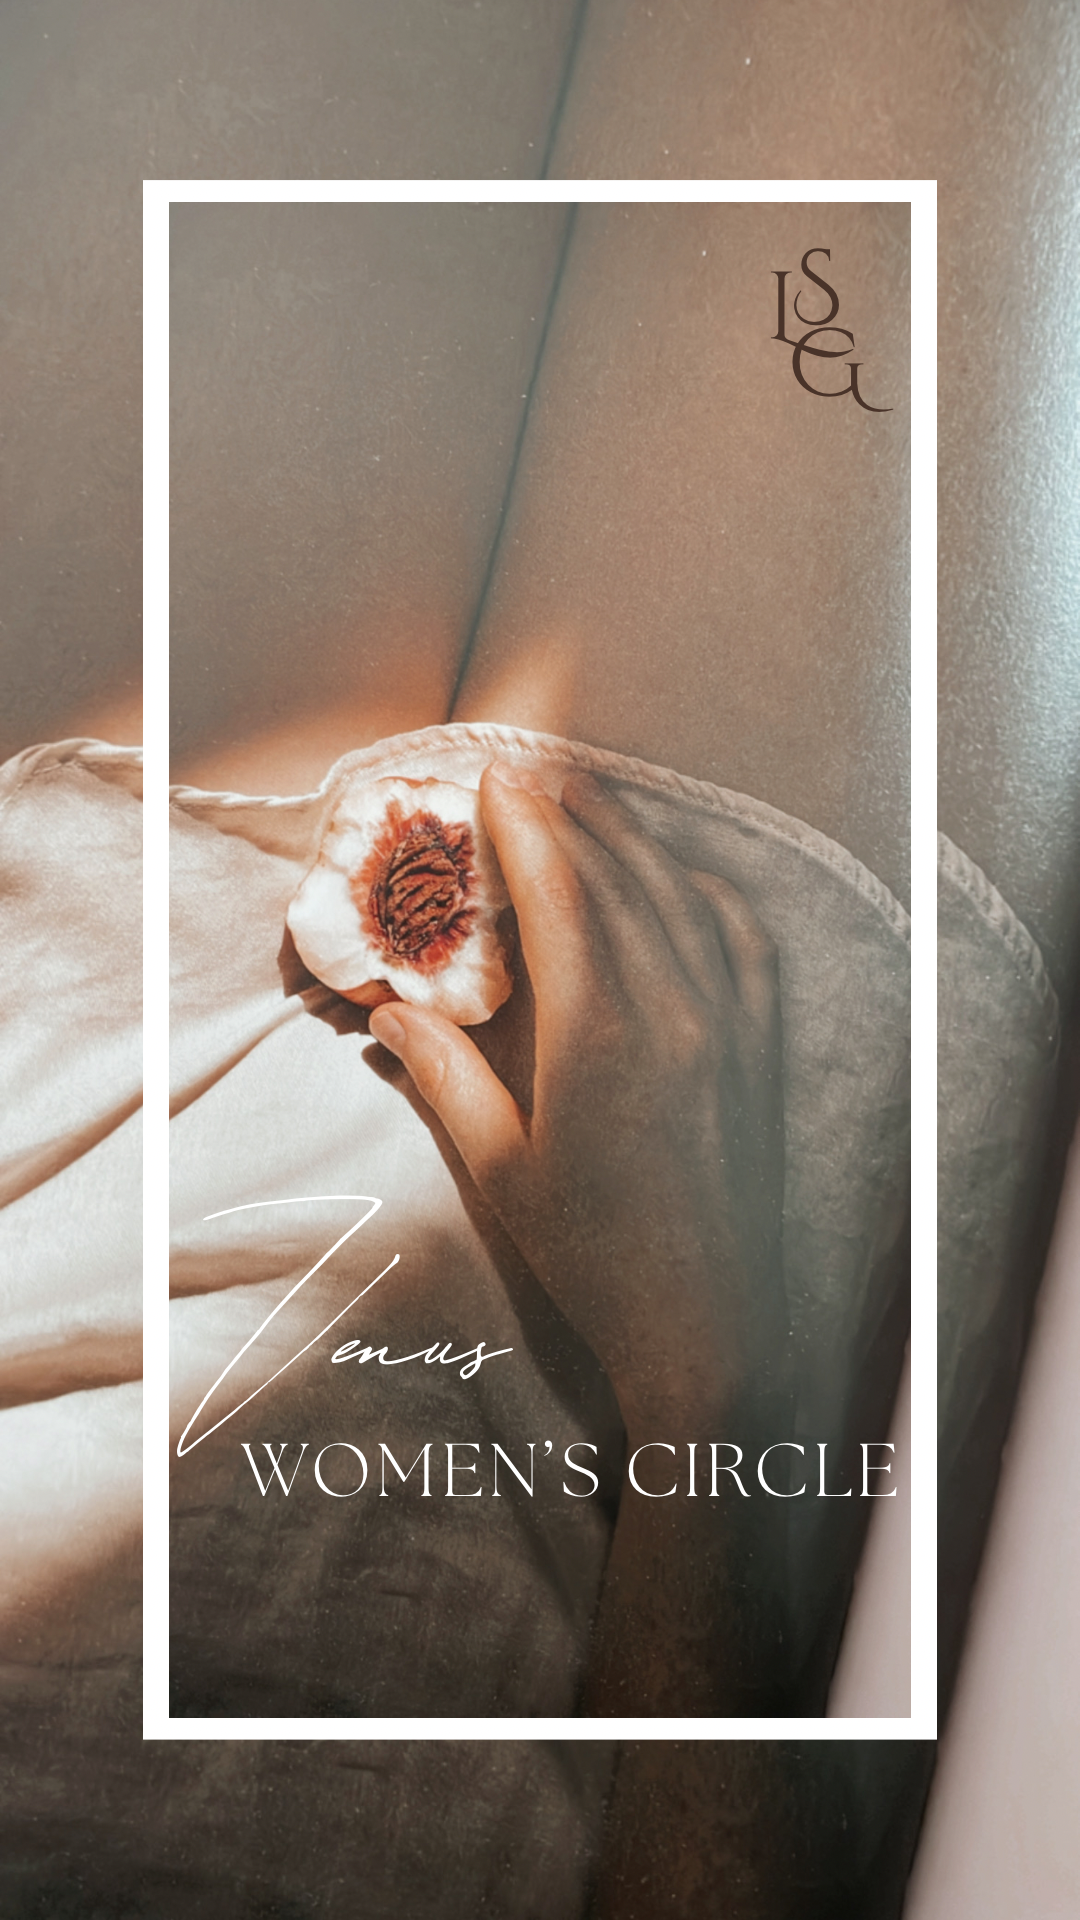 Frauenkreis, Women's Circle